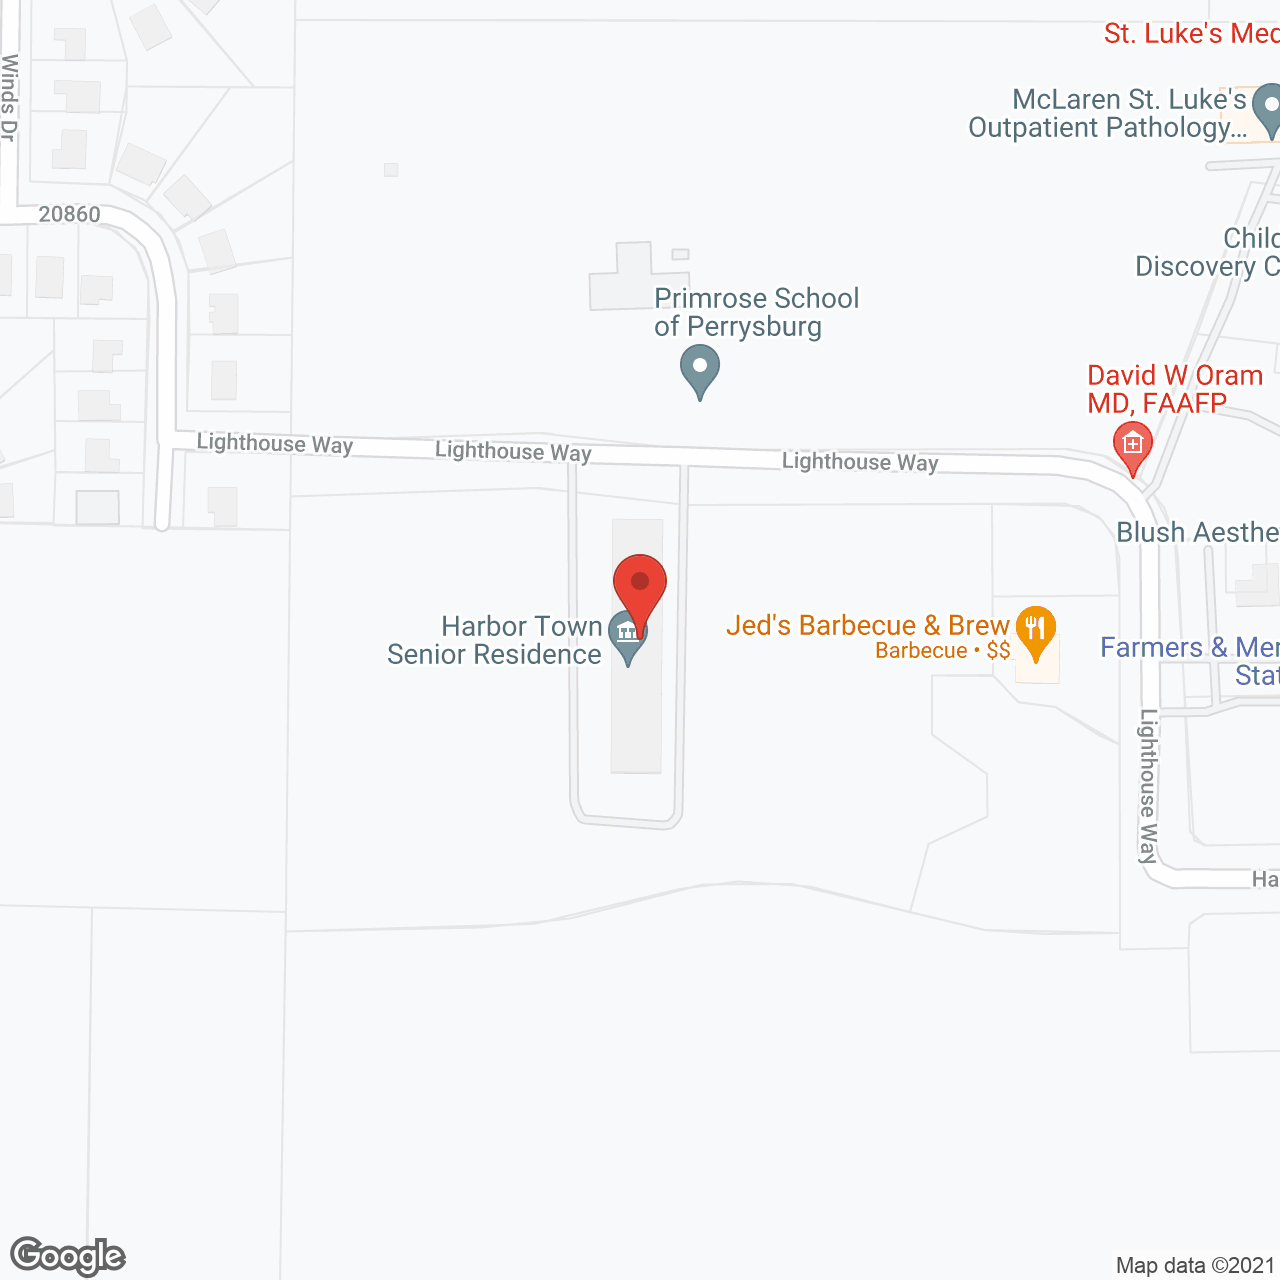 Harbor Town Senior Residence in google map